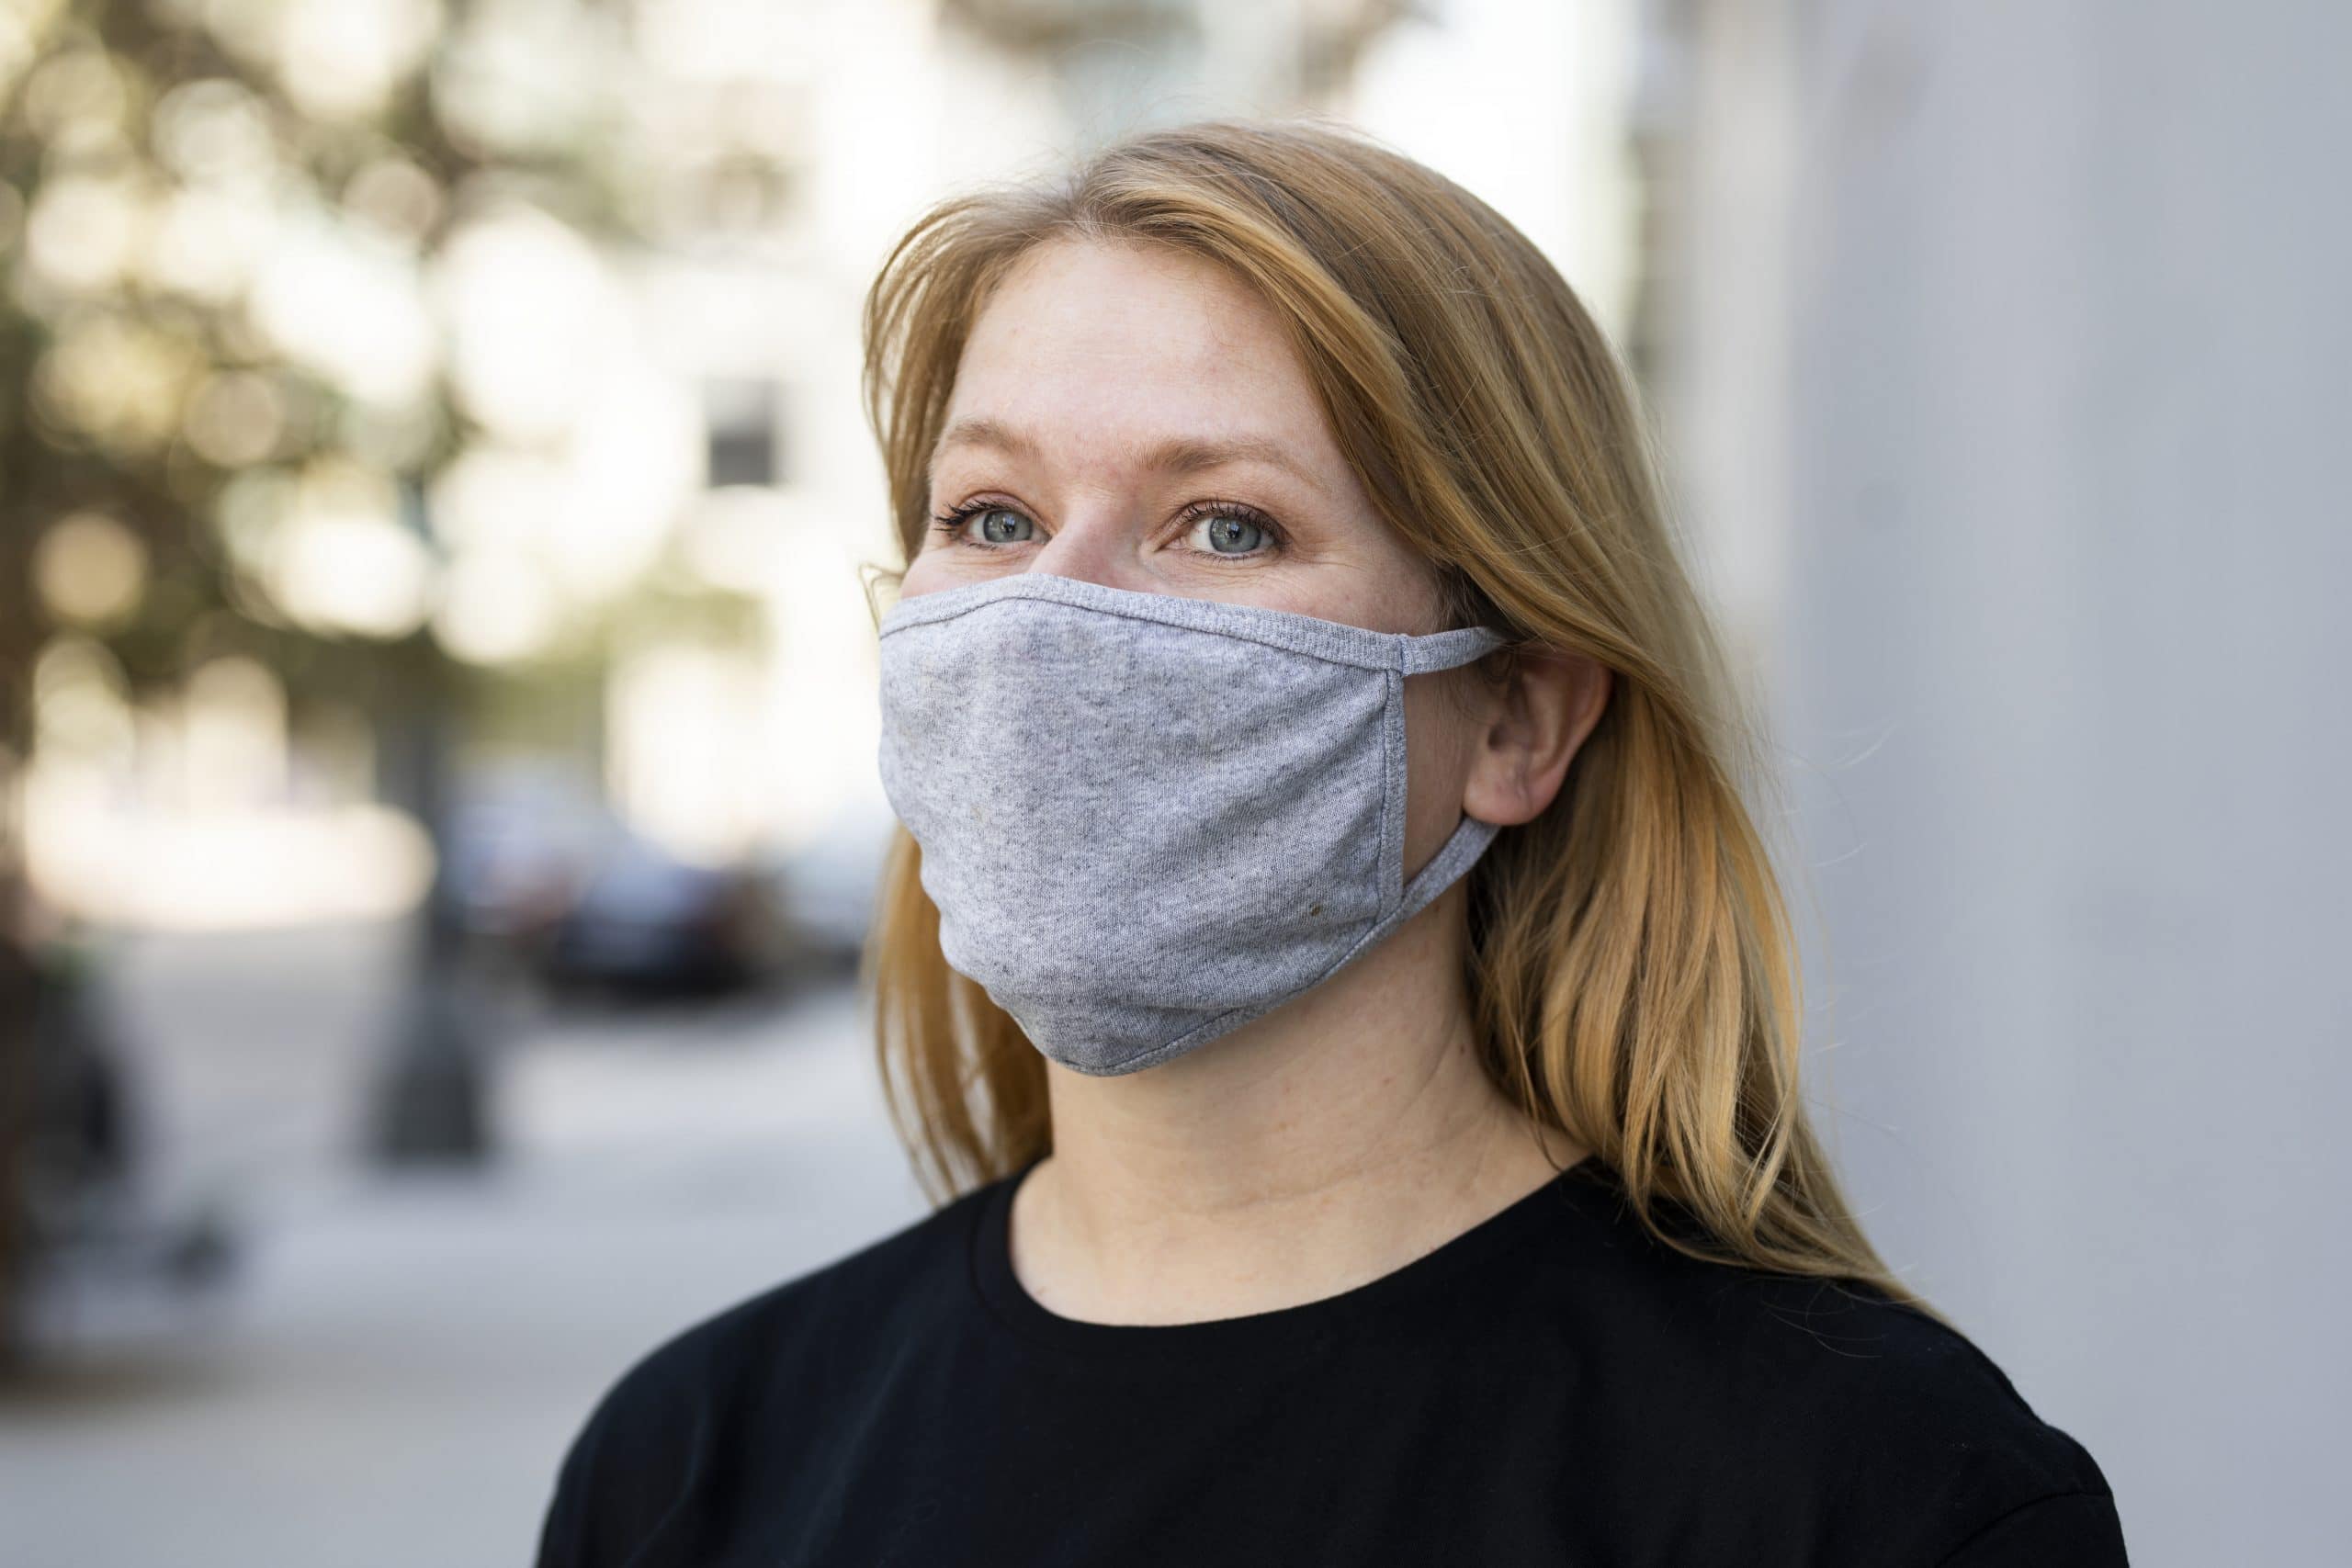 COVID-19: Saiba como prevenir a saúde bucal em tempos de pandemia